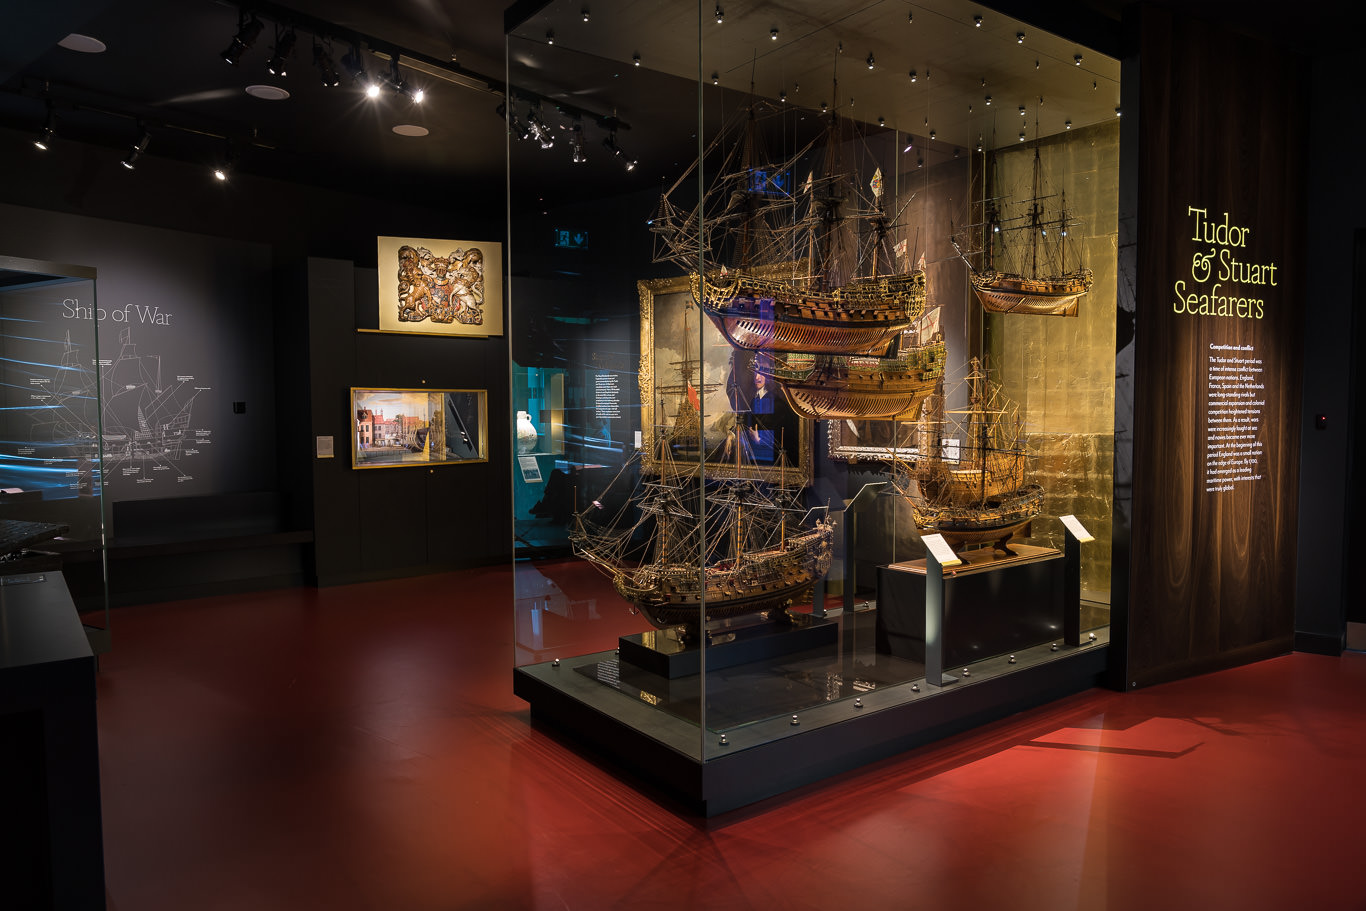 'Tudor & Stuart Seafarers' Display at Endeavour Galleries